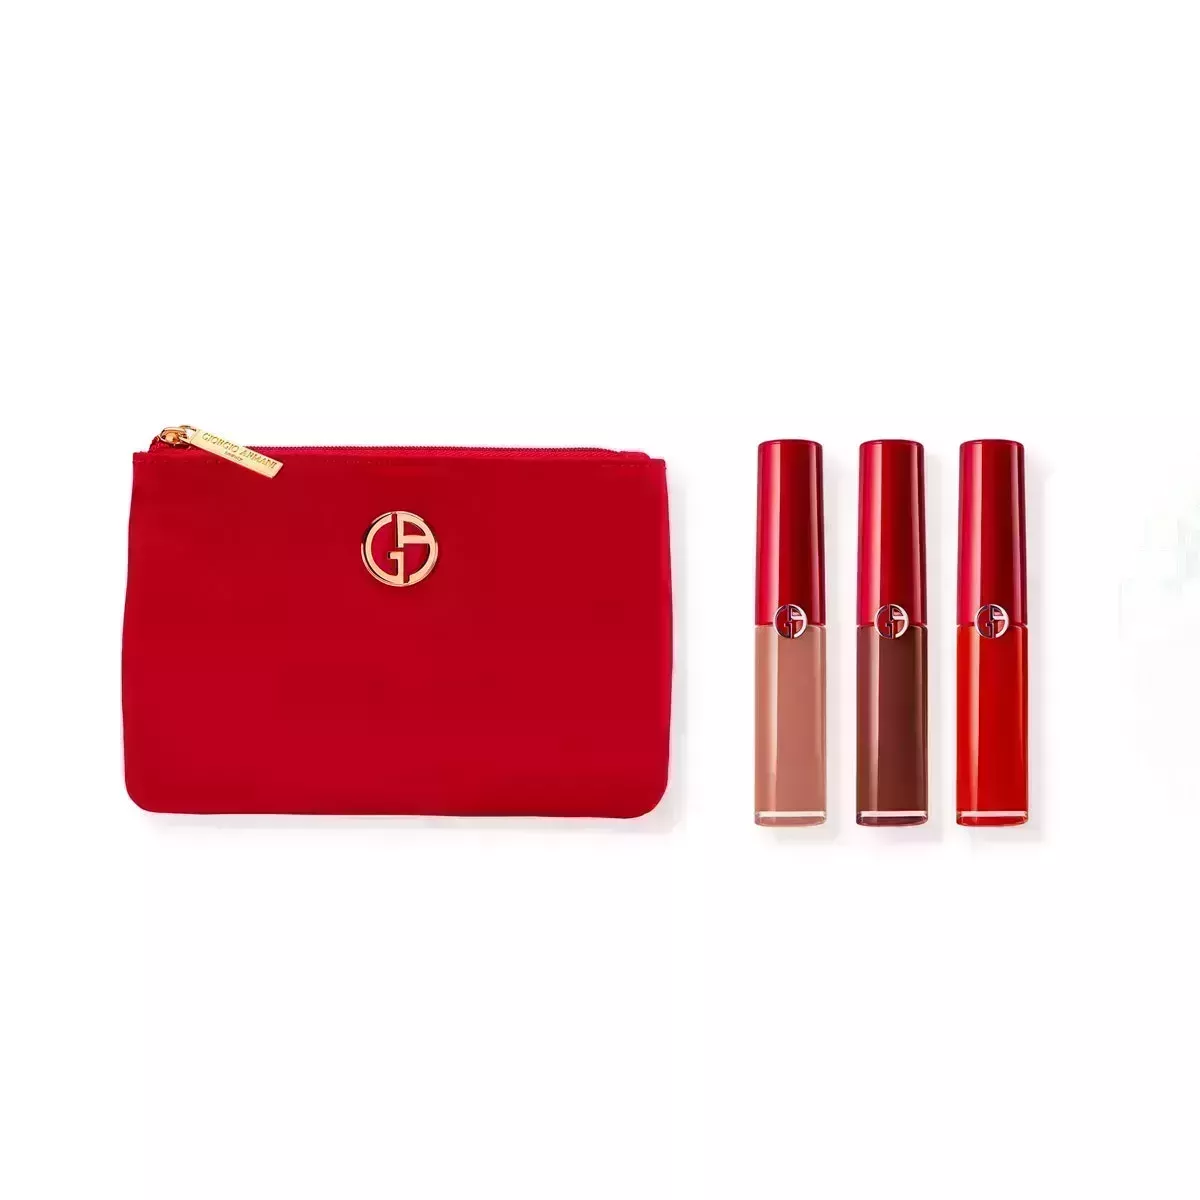 Giorgio Armani Lip Maestro Mini Lipstick Set with red pouch on white background